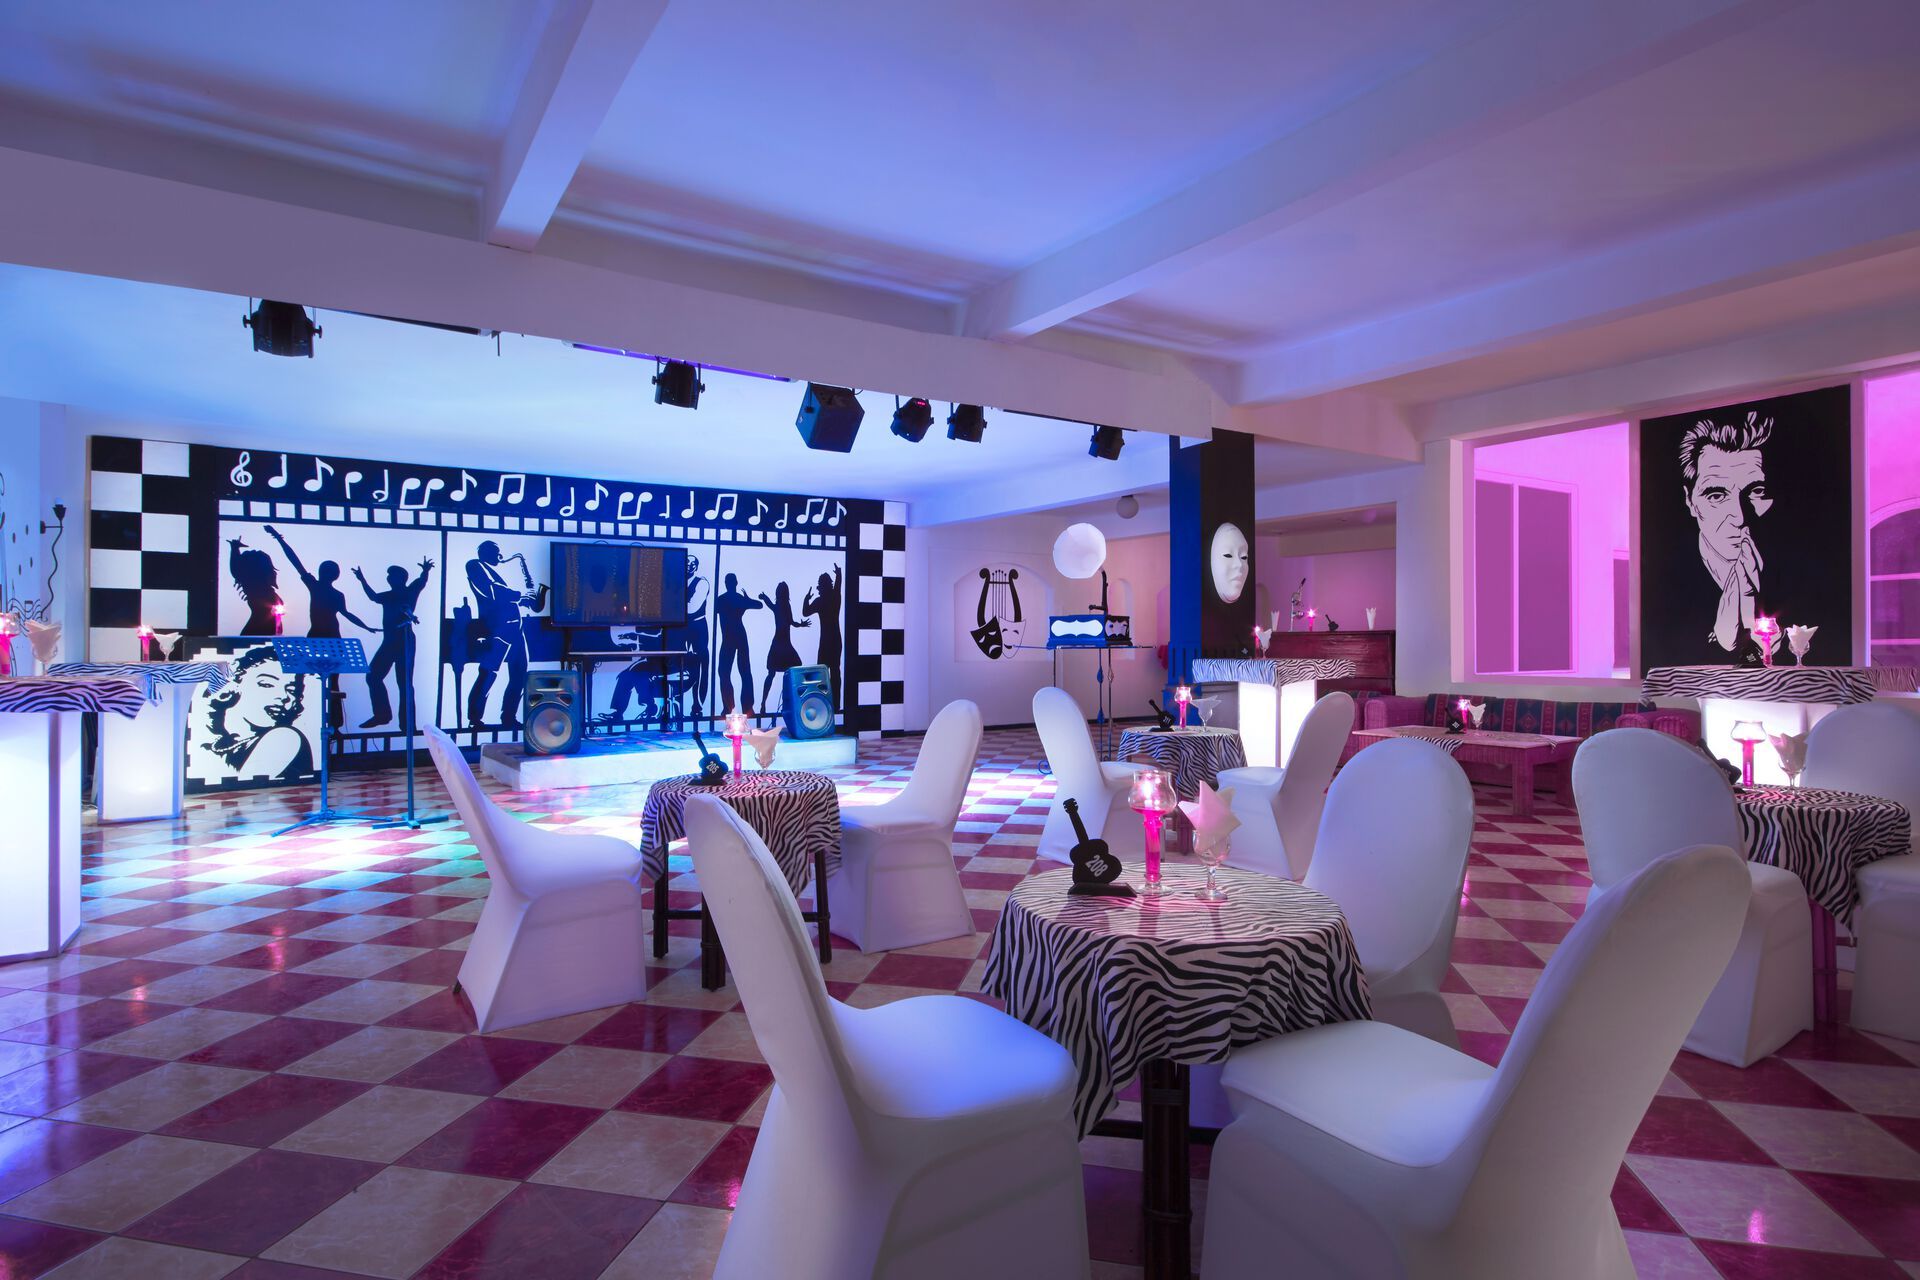 Egypte - Mer Rouge - Hurghada - Hôtel Bel Air Azur Resort 3* - Adult Only